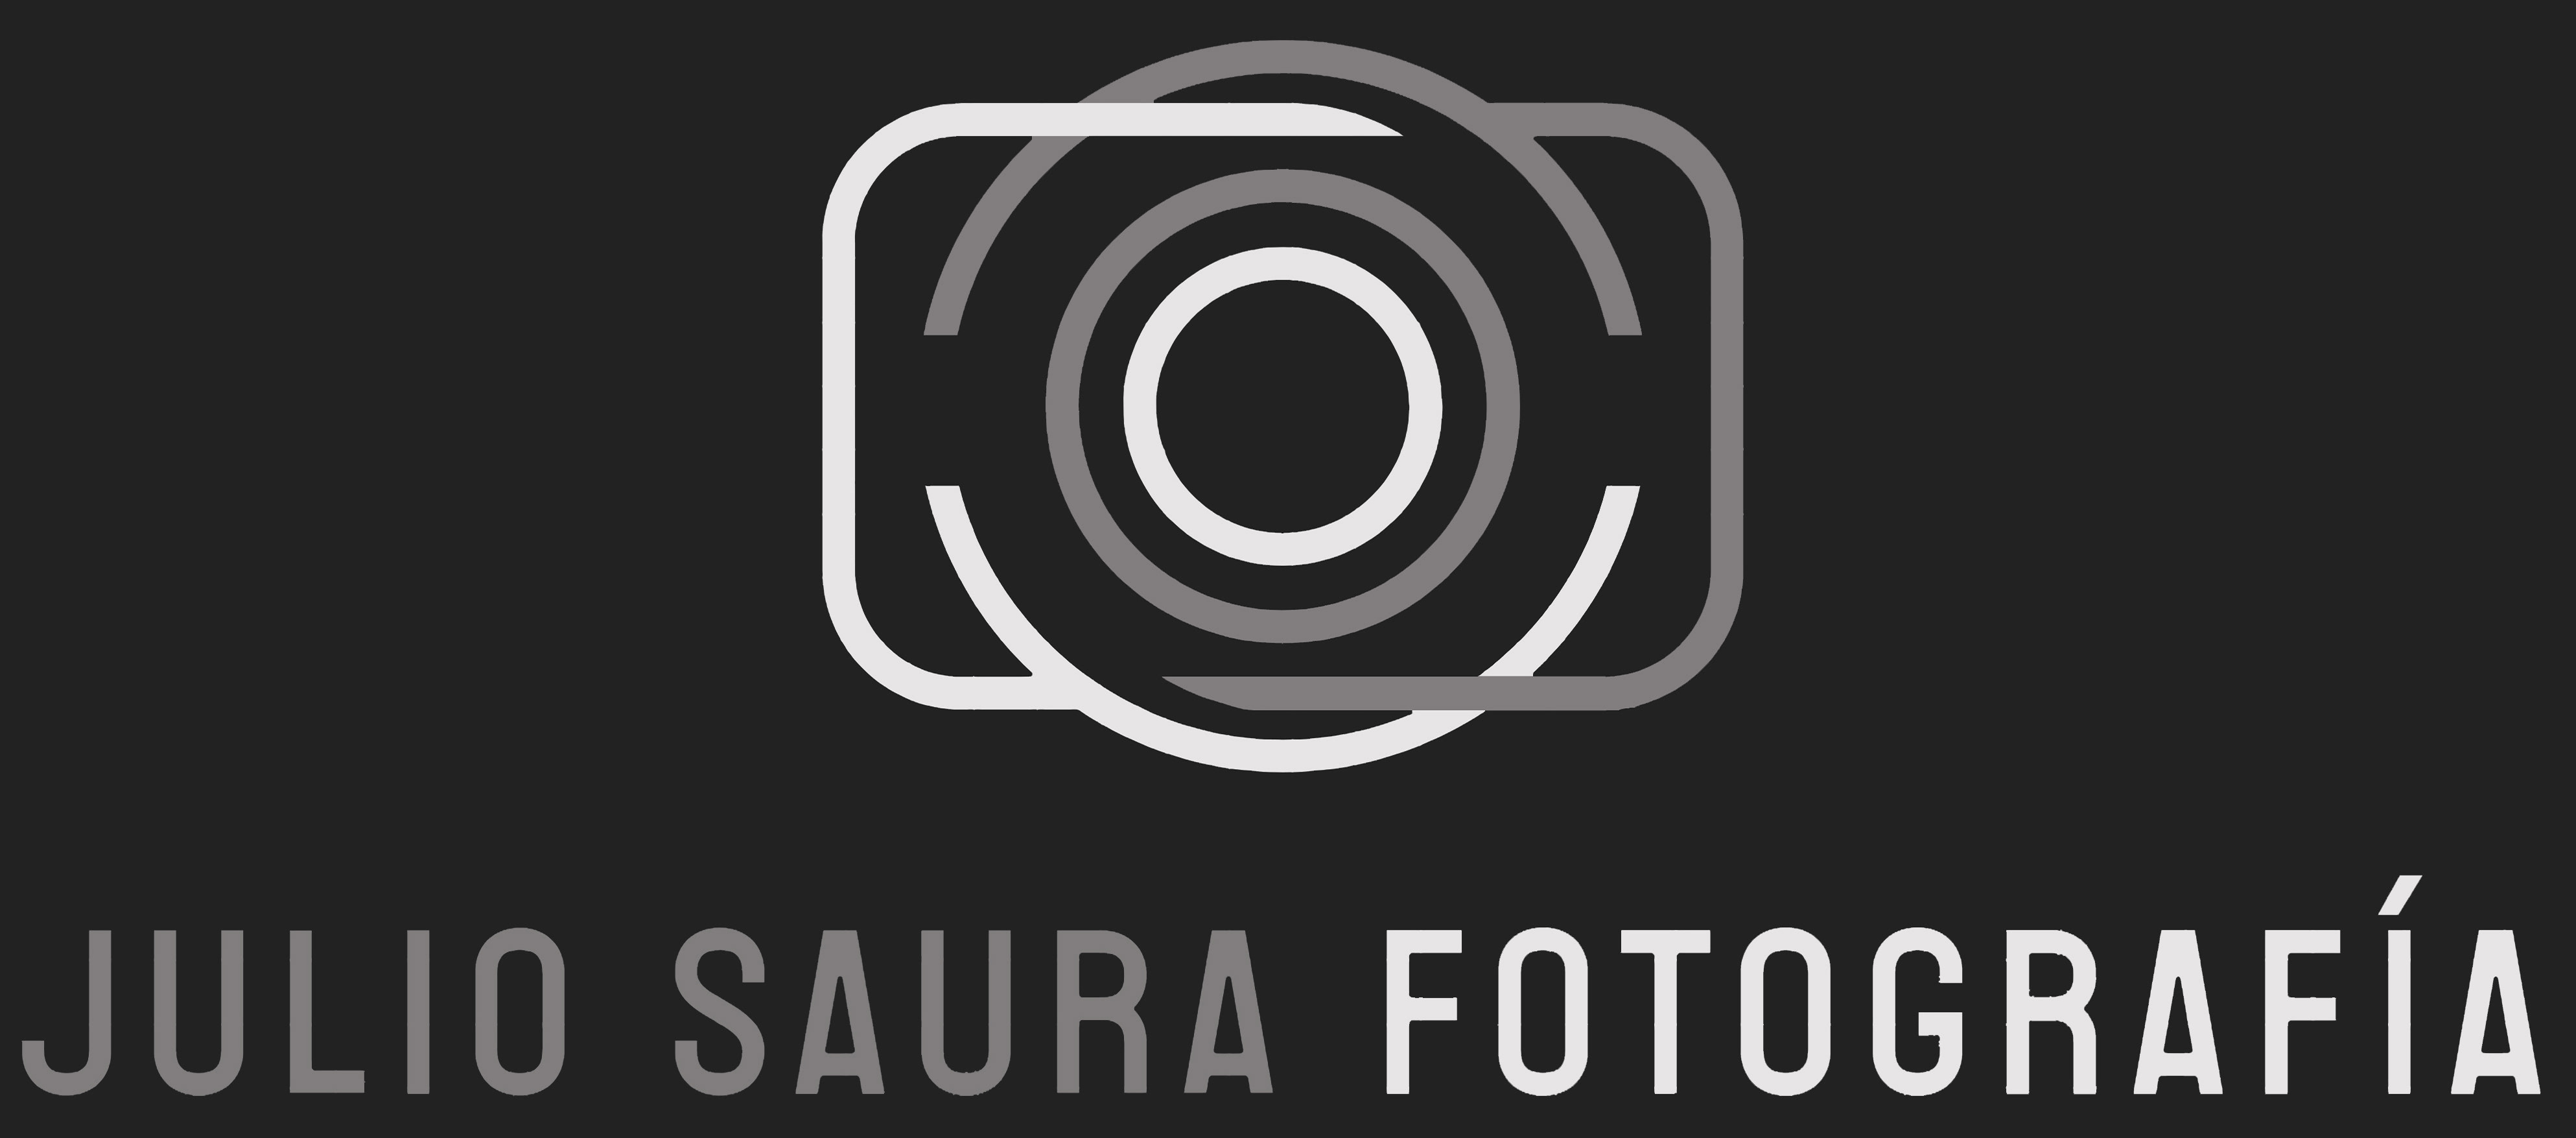 Julio Saura FOTOGRAFÍA